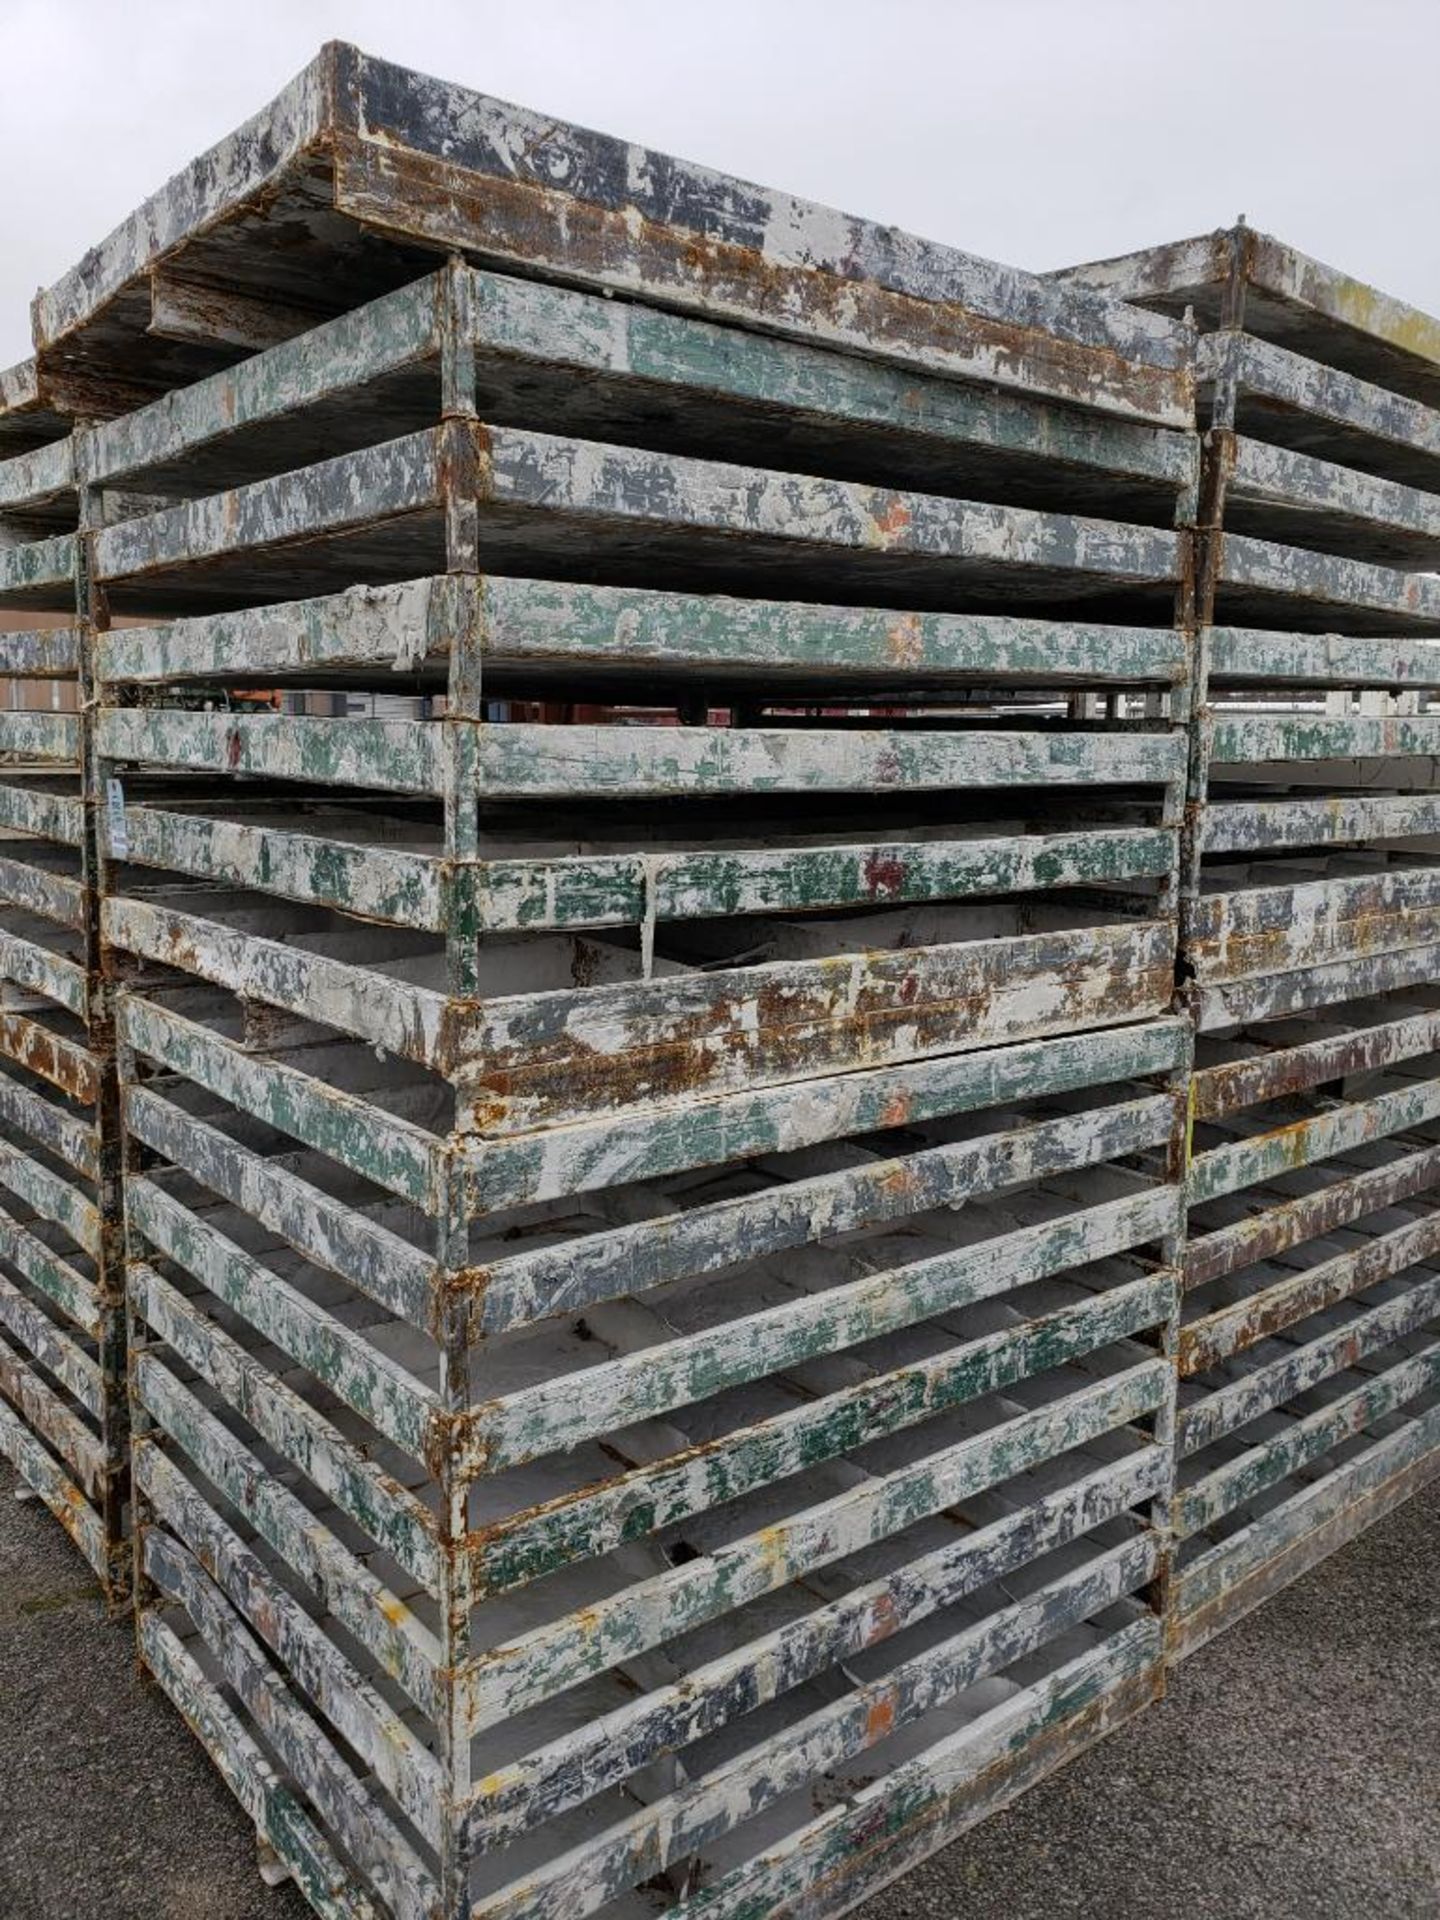 Qty 30 - Steel catch pan pallets. Heavy duty. 54in x 44in x 7in. - Image 2 of 5